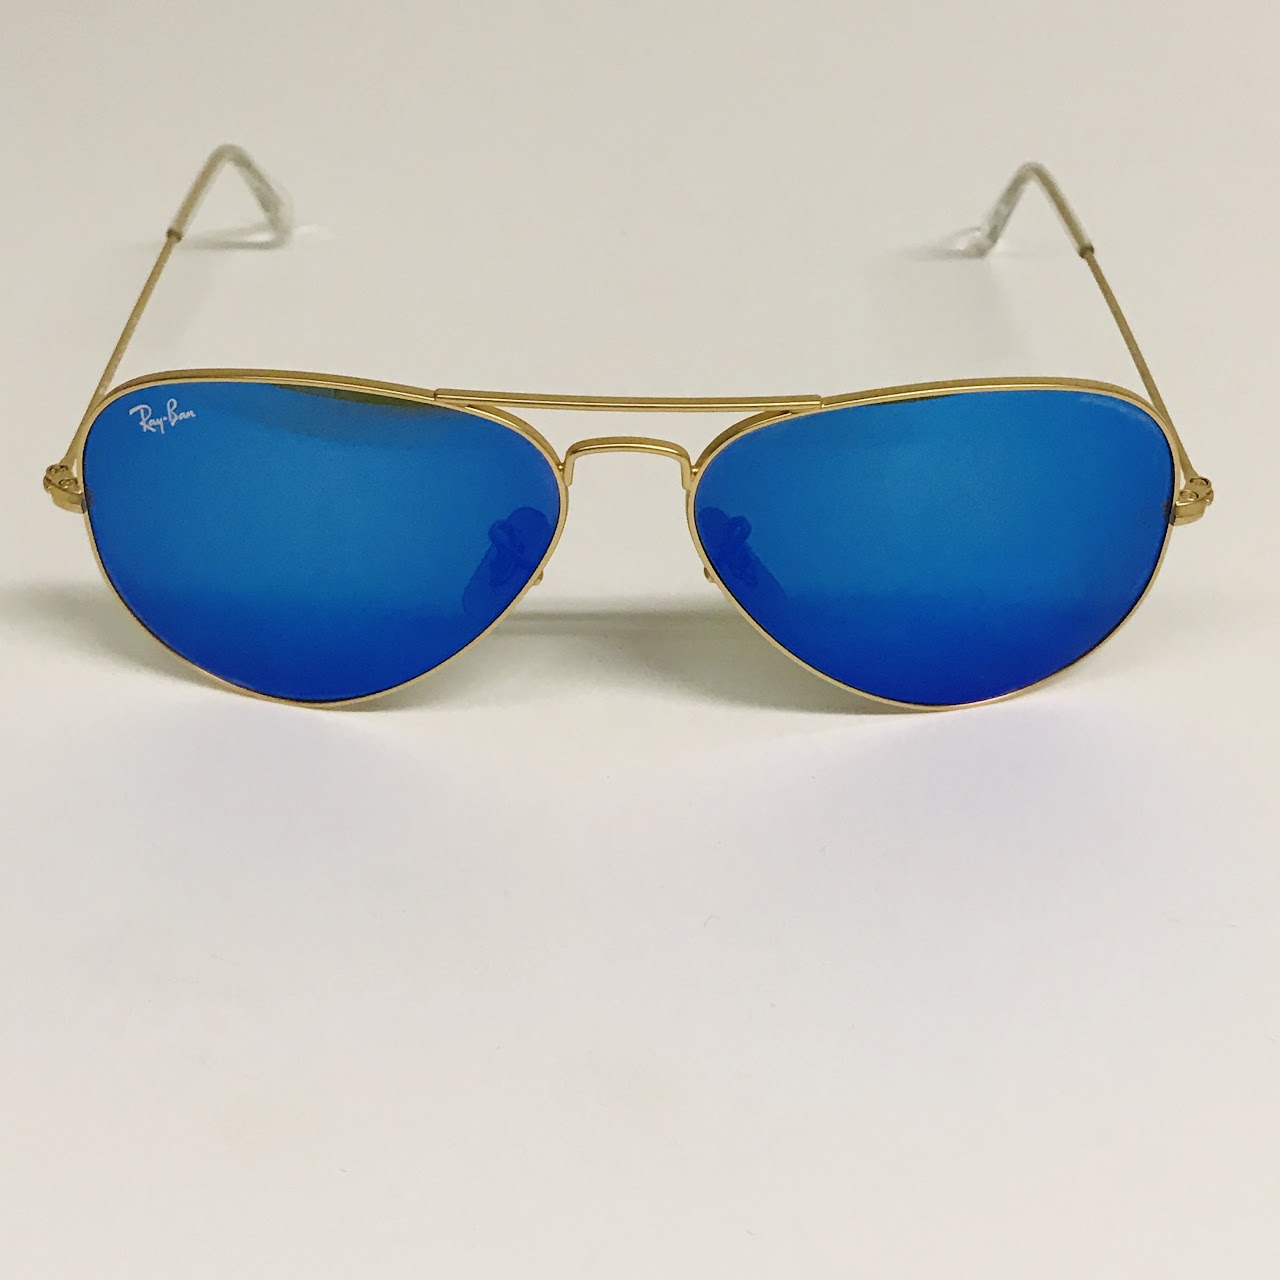 Ray-Ban Mirrored Blue Aviator Sunglasses